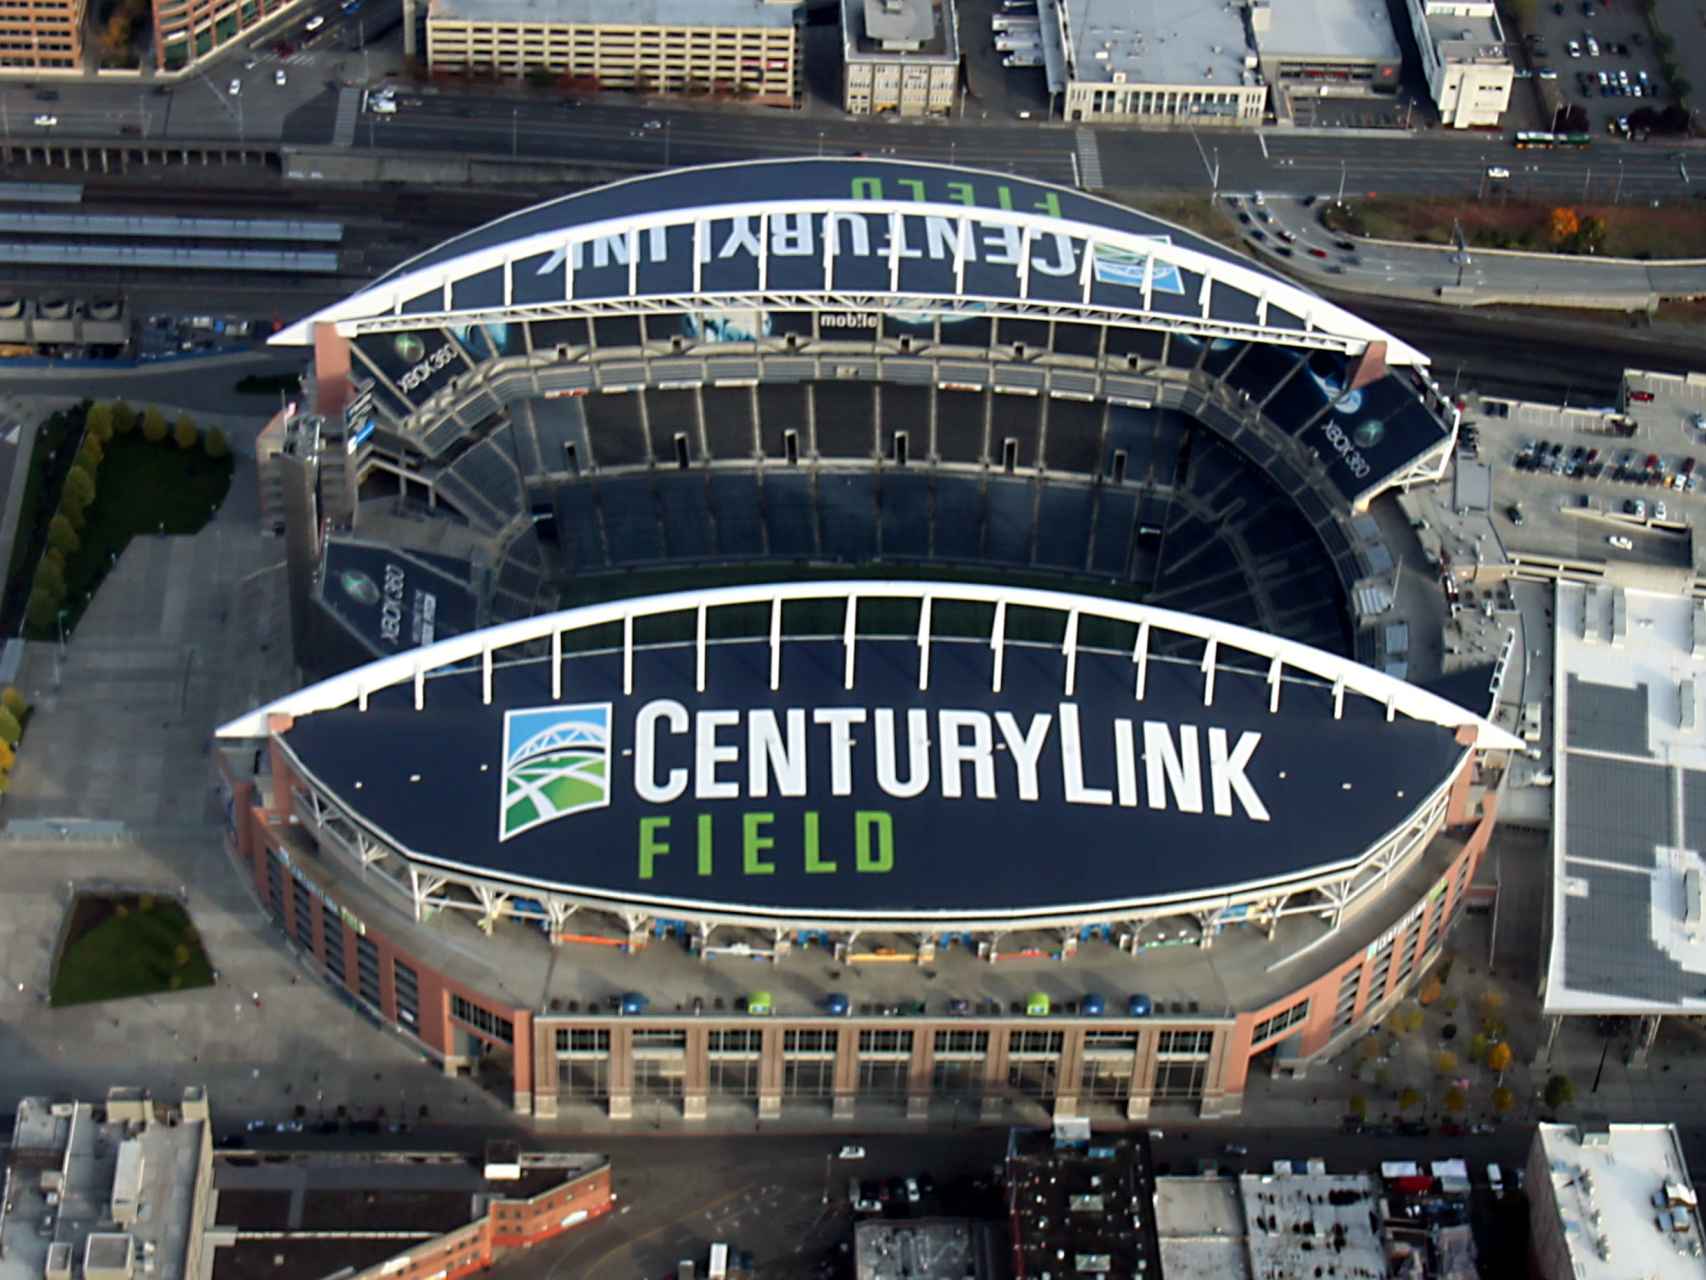 El CenturyLink Field, sede de los Seattle Seahawks.